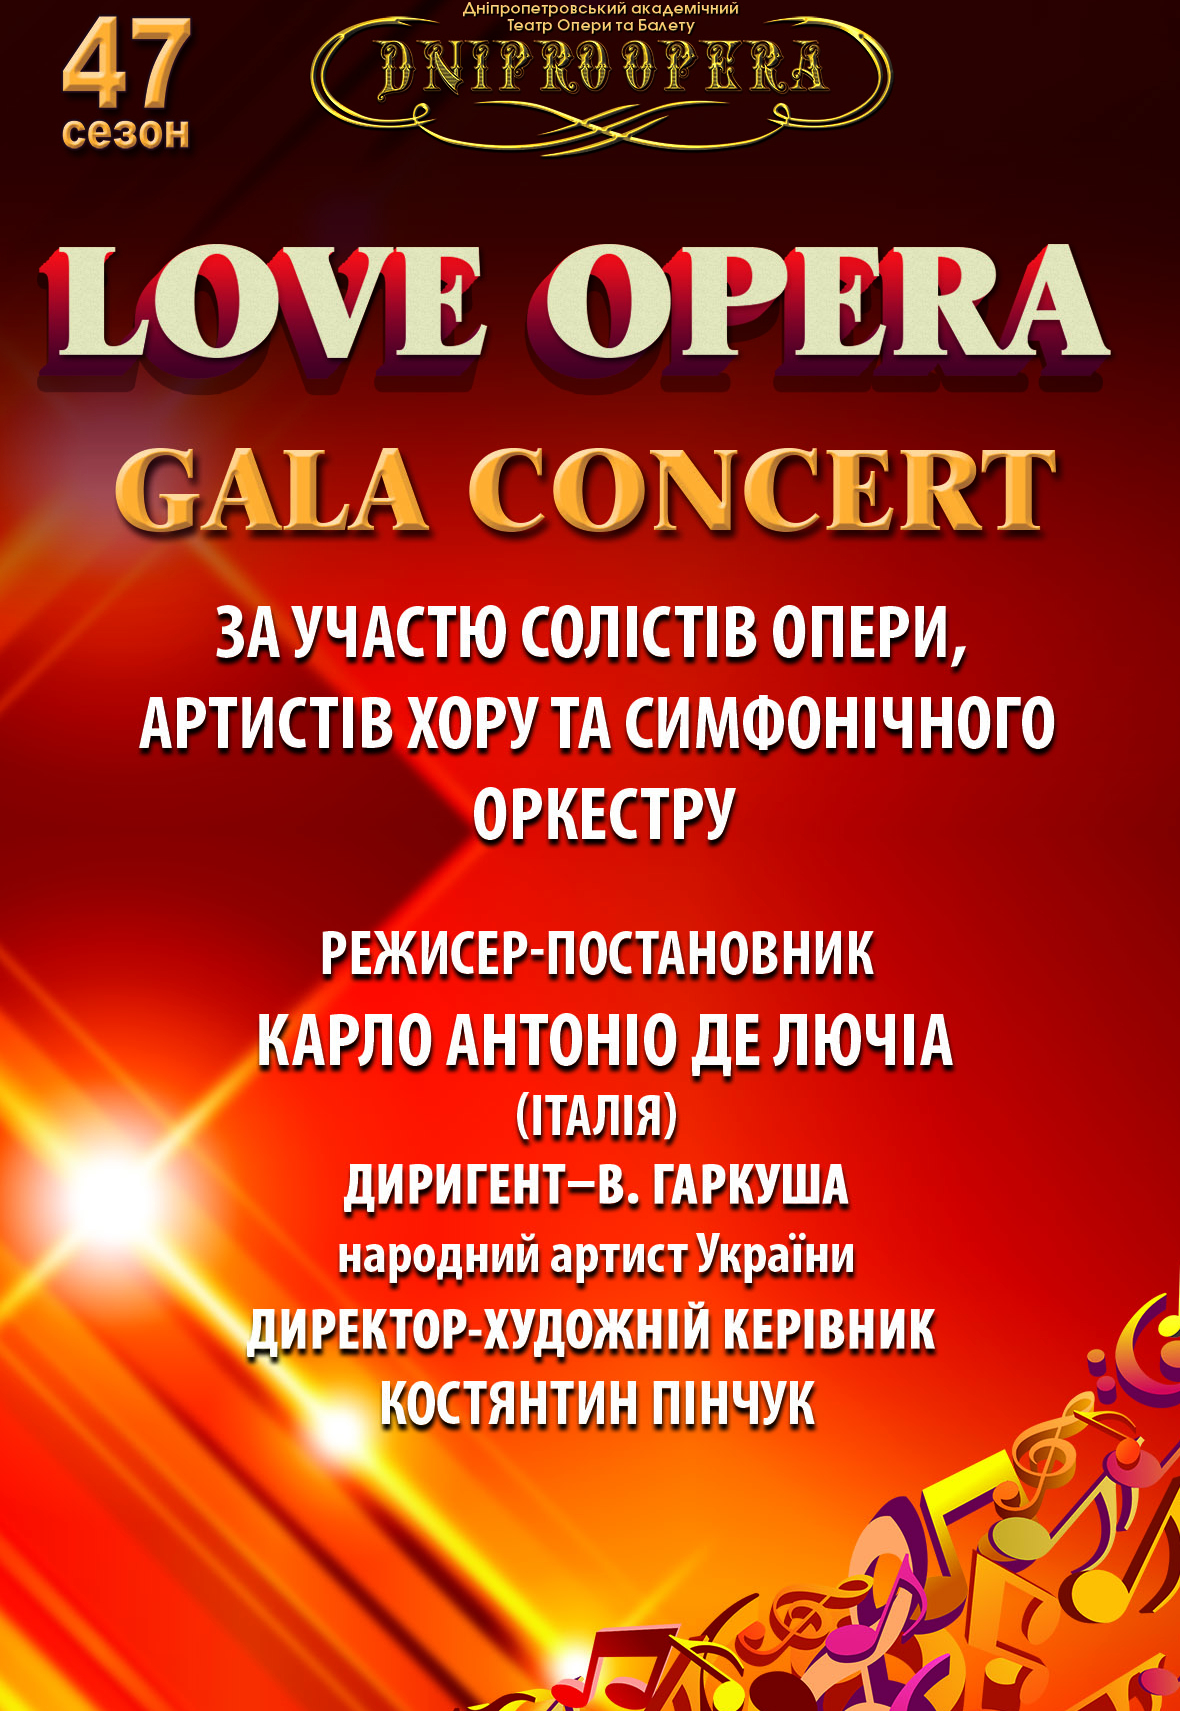 Love opera Днепр, 28.02.2021, цена, расписание, купить билеты. Афиша Днепра